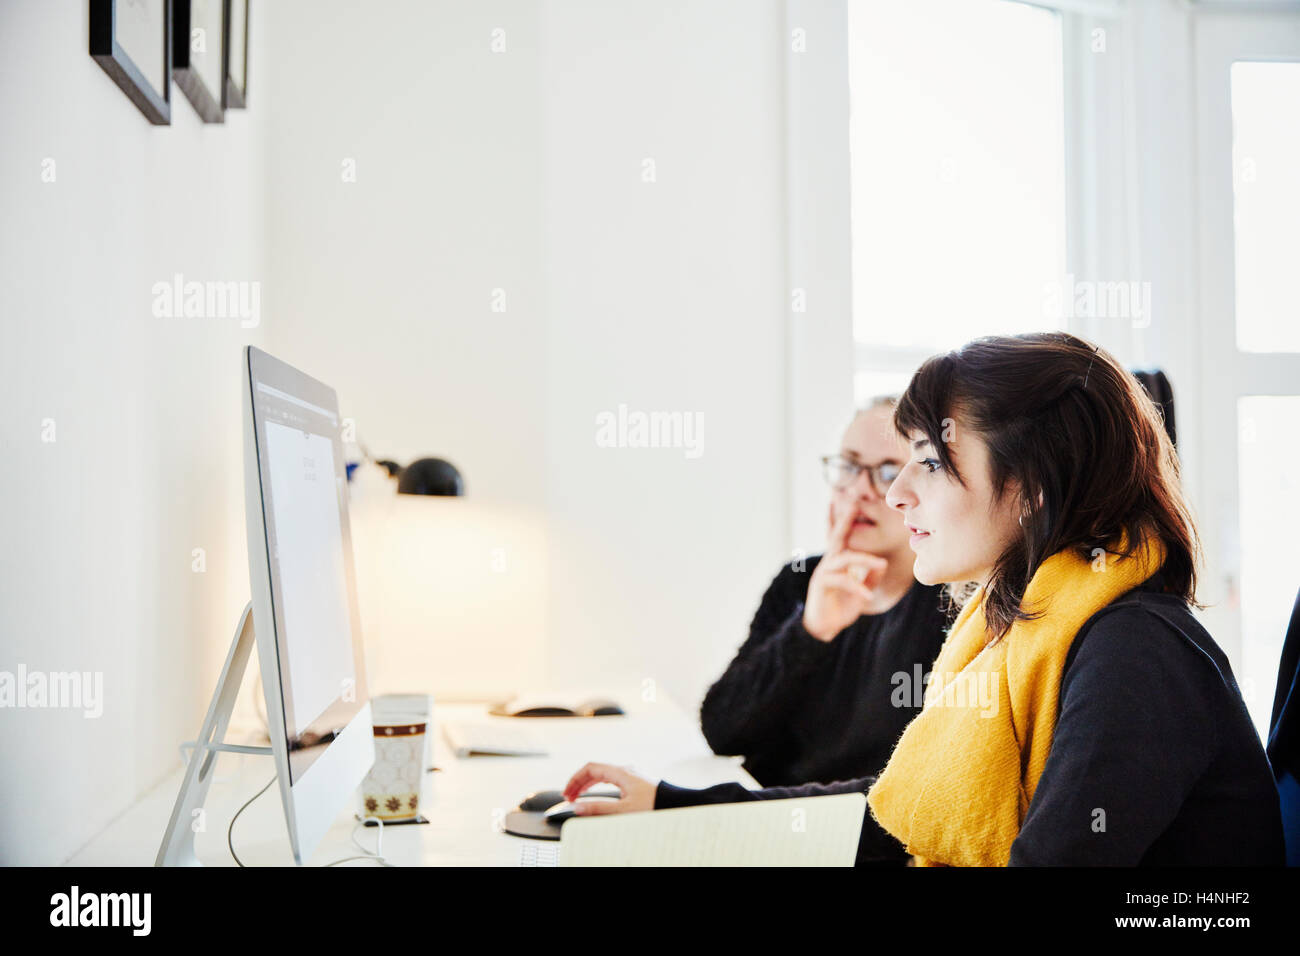 Zwei Frauen sitzen einen Computer-Bildschirm teilen und diskutieren die grafischen Inhalten. Stockfoto